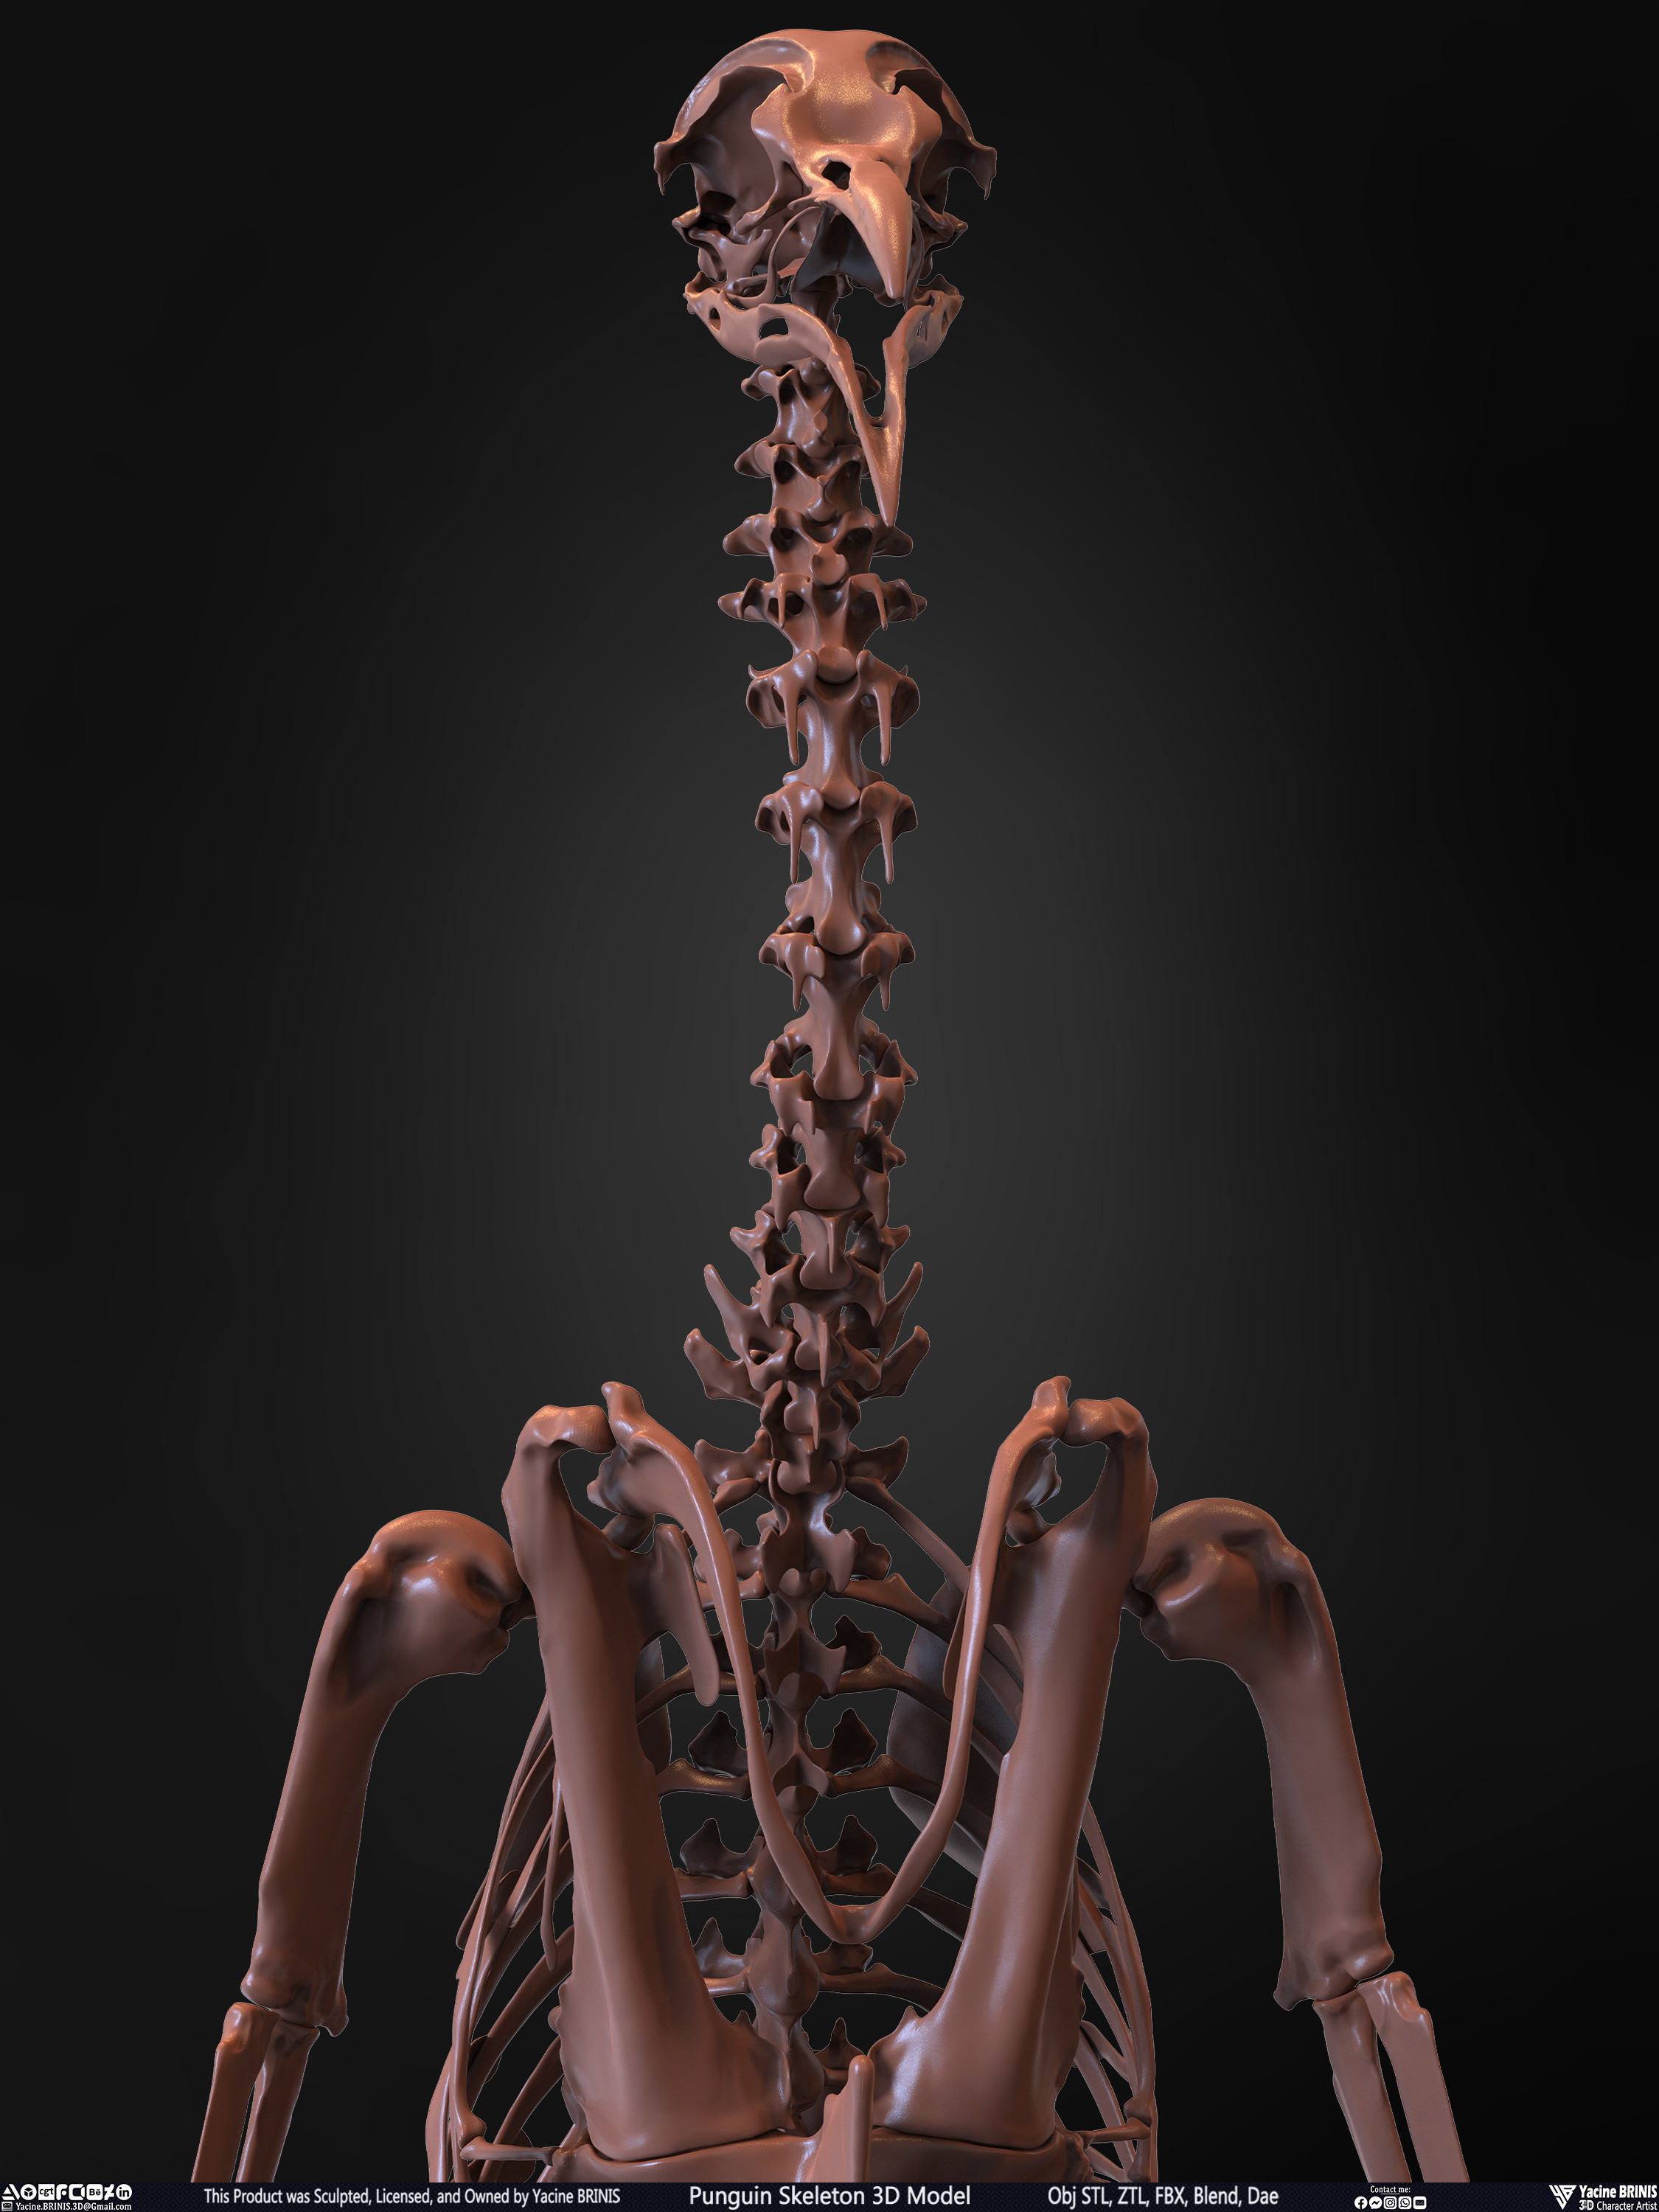 Penguin Skeleton 3D Model Sculpted by Yacine BRINIS Set 018